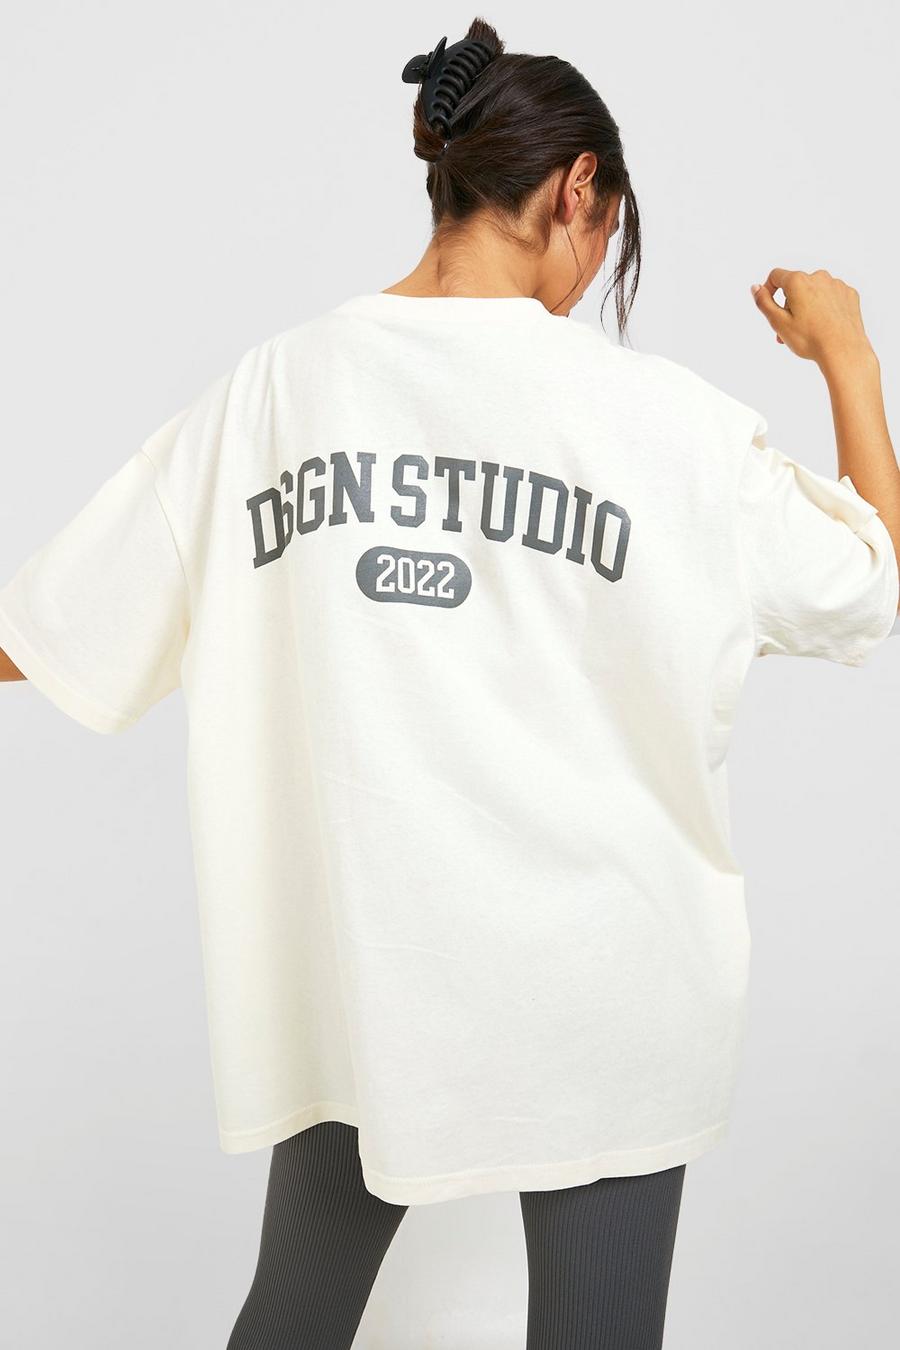 T-shirt oversize con stampa Dsgn Studio sul retro, Ecru bianco